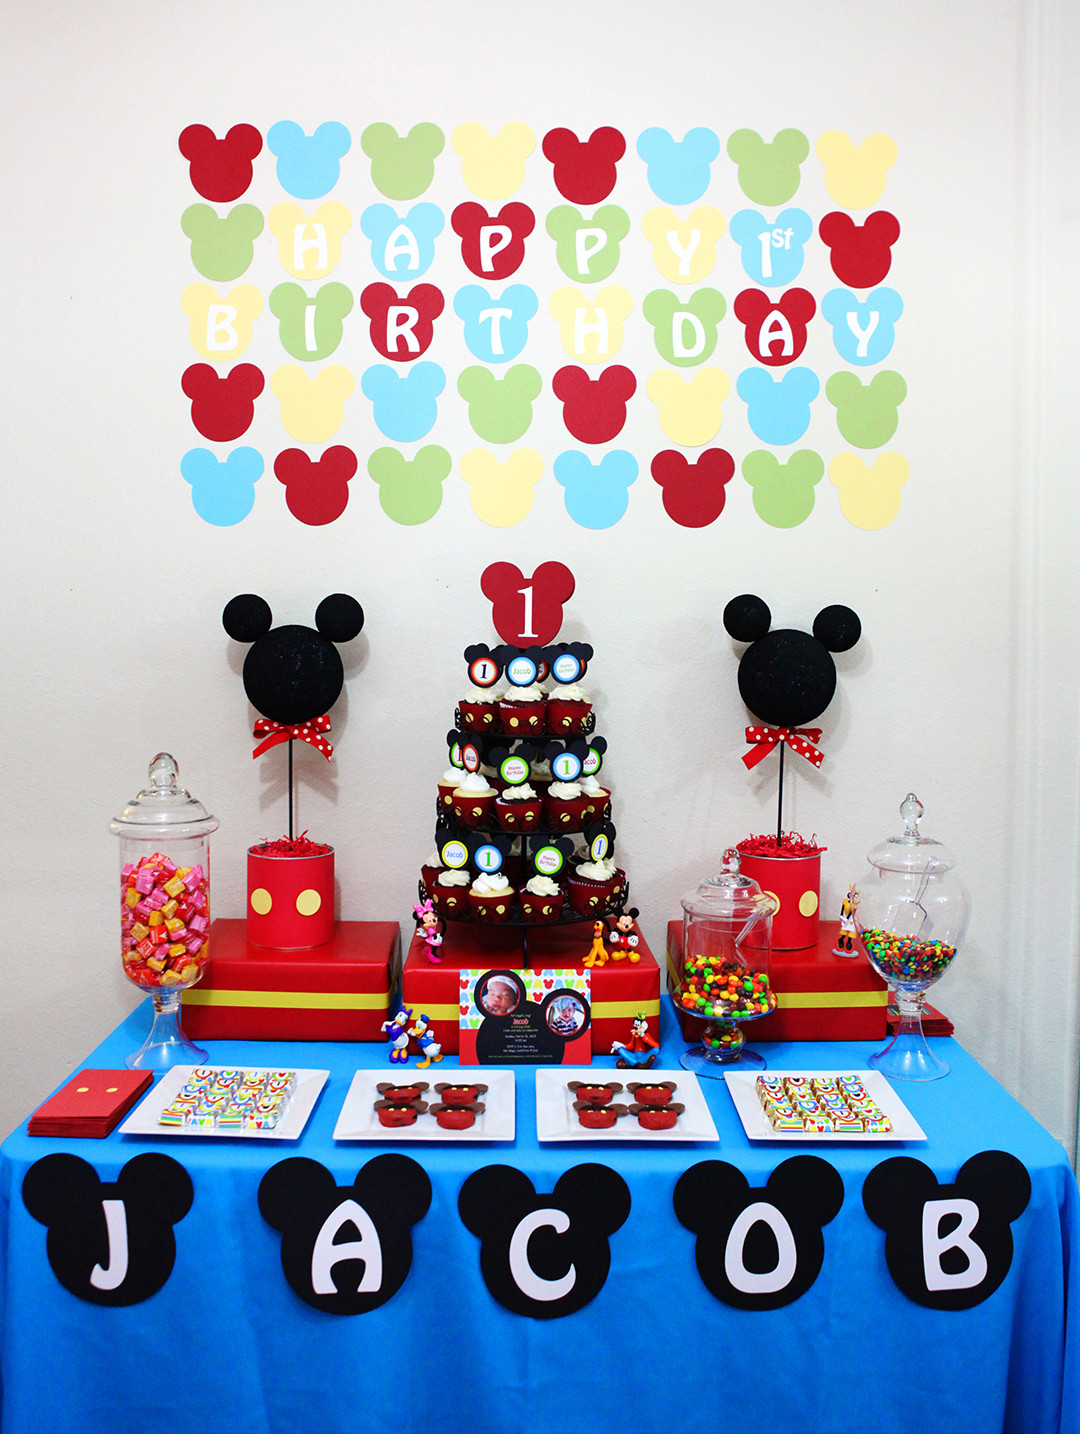 Mickey Mouse Birthday Party Ideas
 Invitation Parlour Mickey Mouse Birthday Party